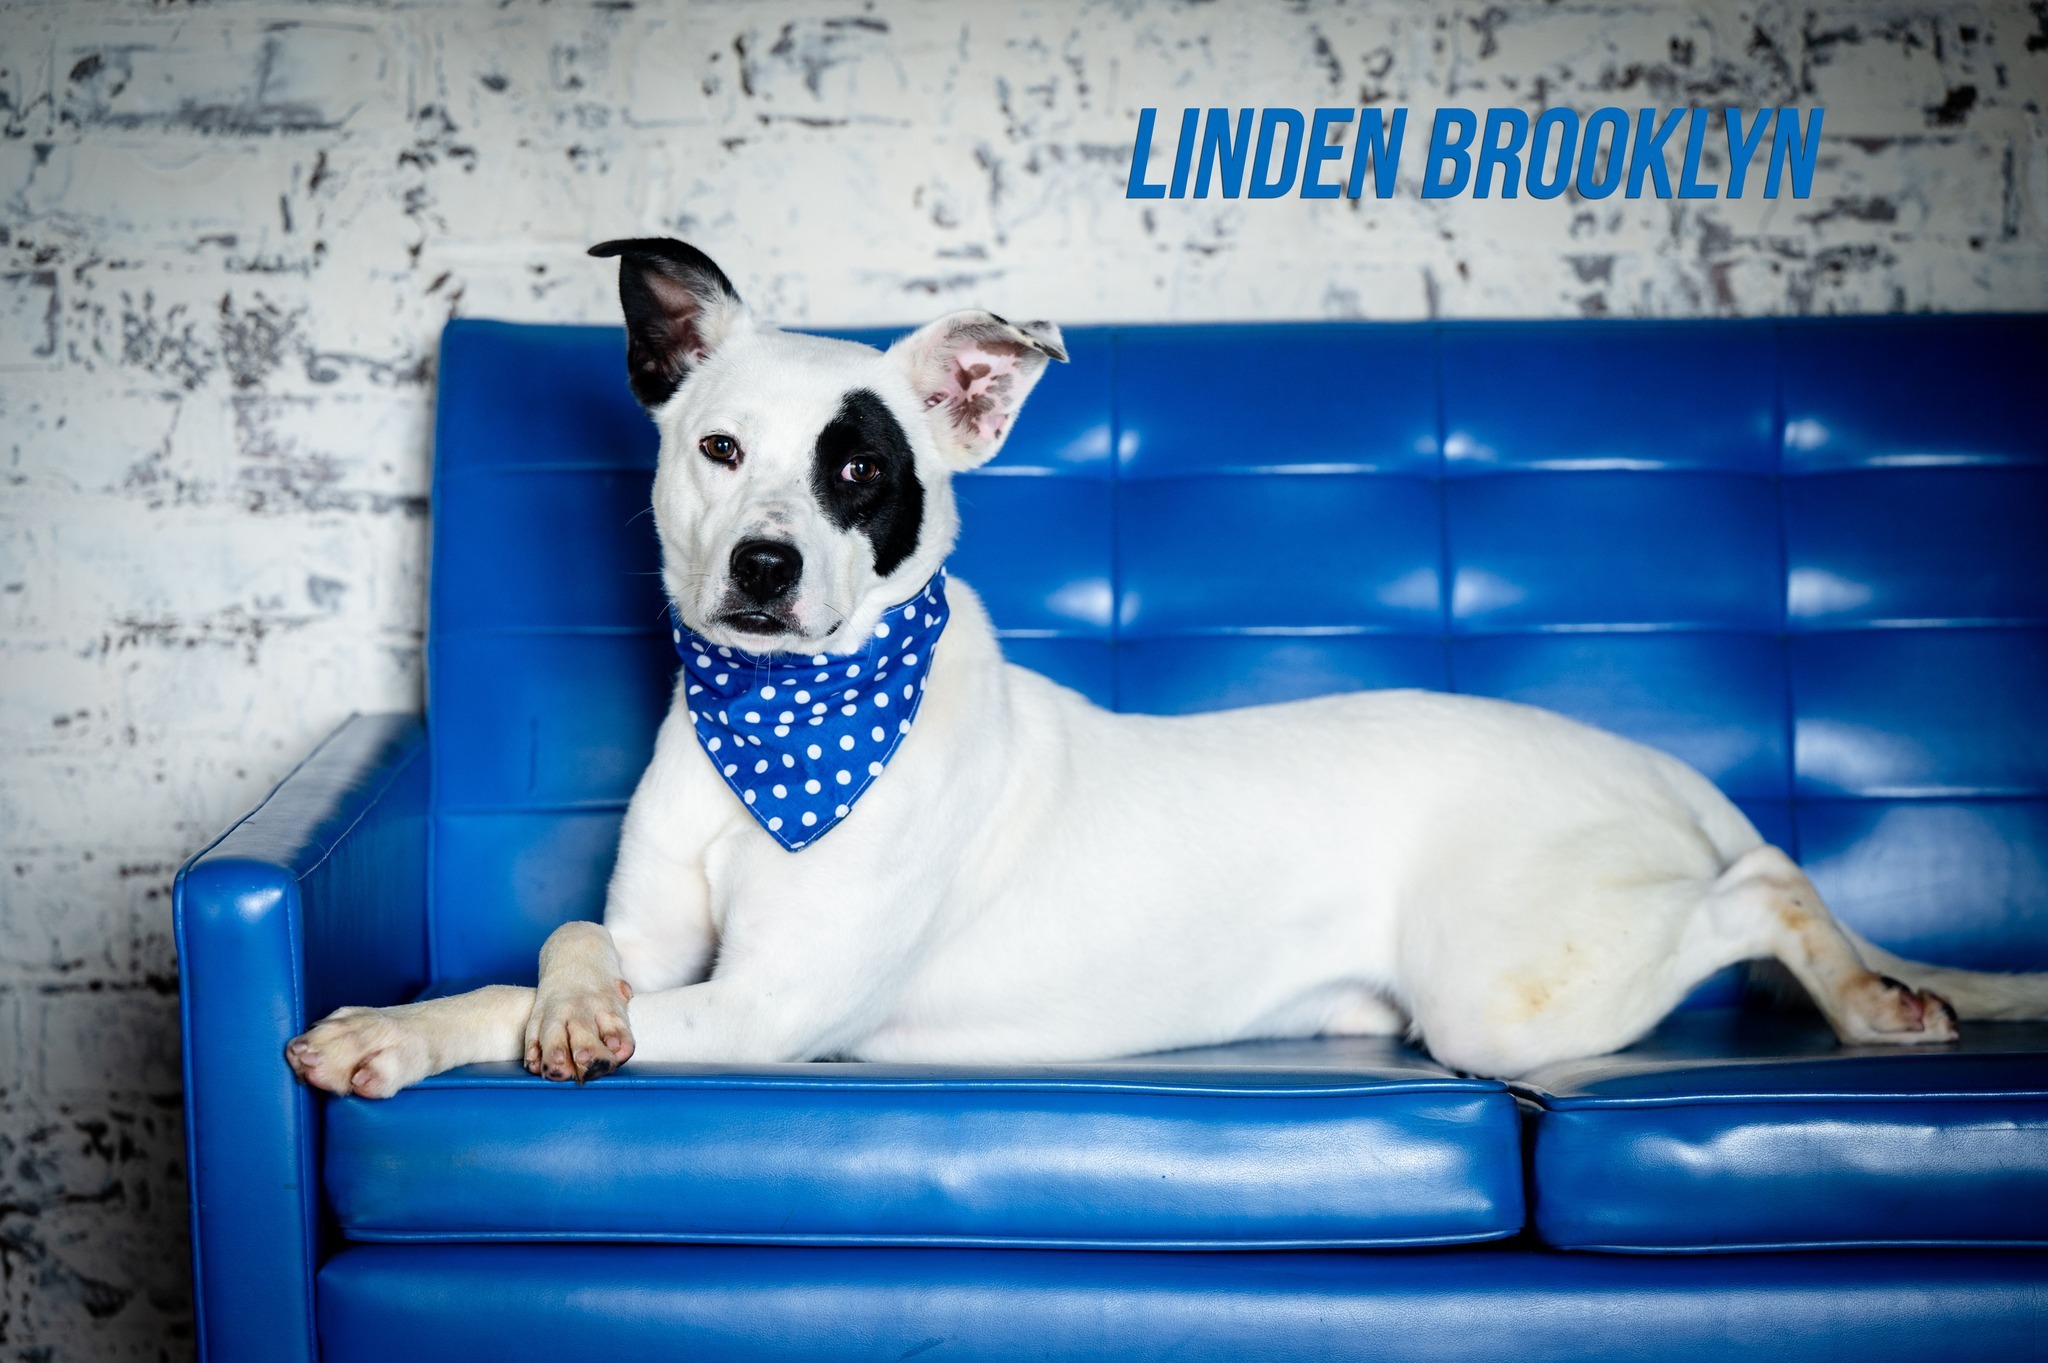 Linden Brooklyn